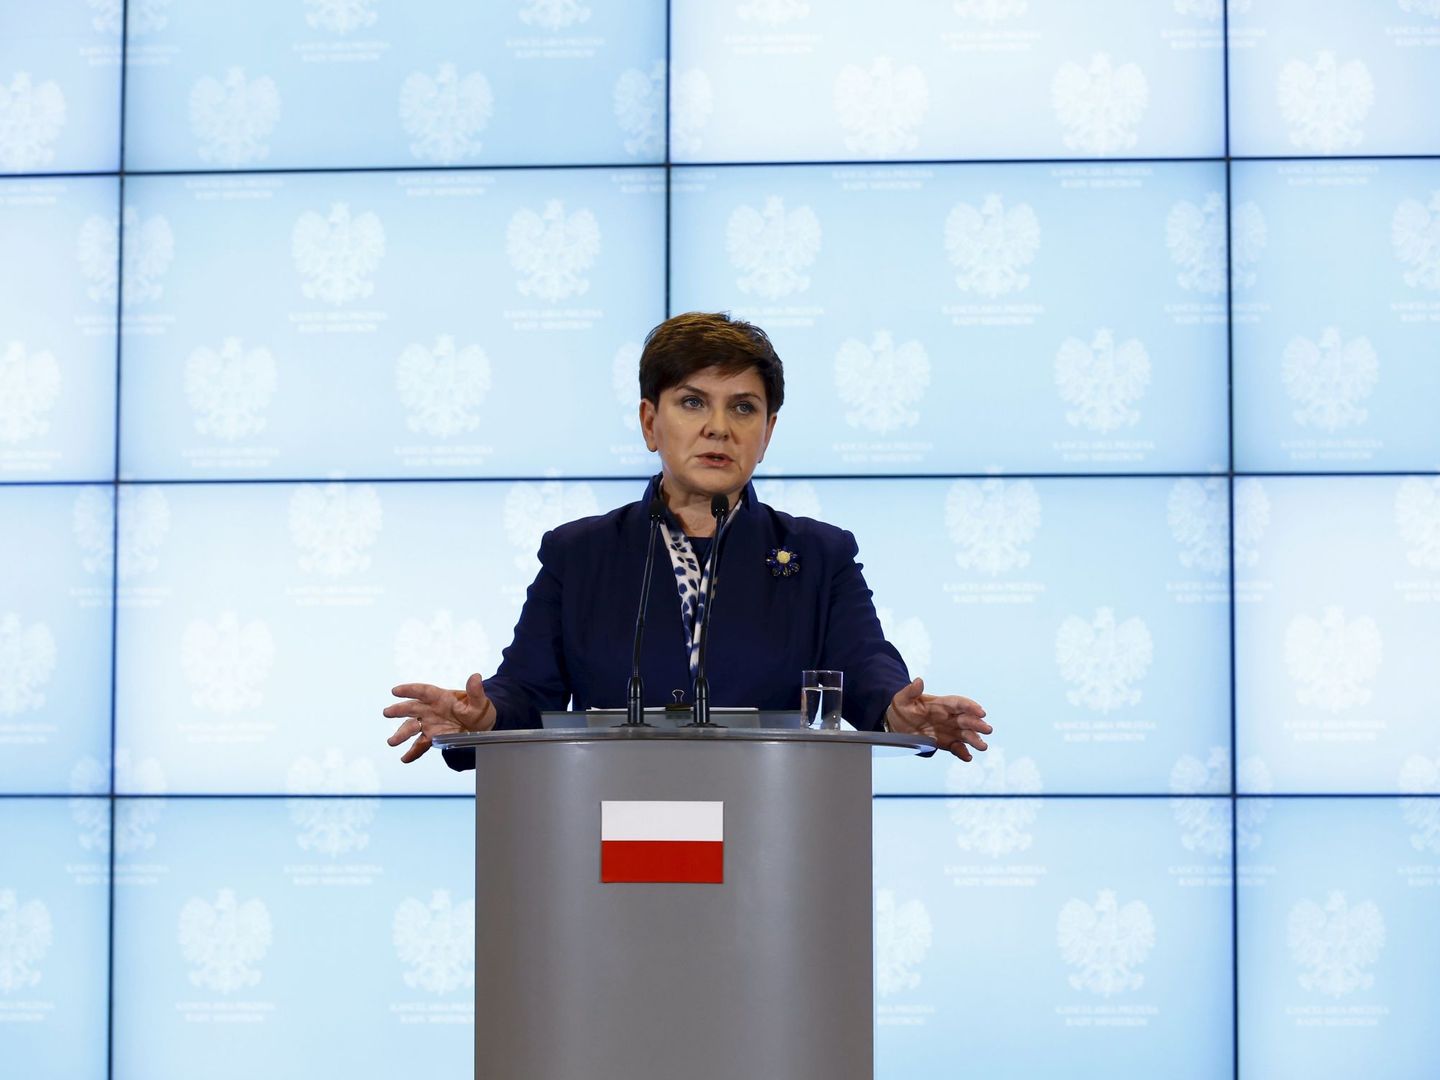 La primera ministra de Polonia, Beata Szydlo, durante una rueda de prensa en Varsovia, el 13 de enero de 2016. (Reuters)